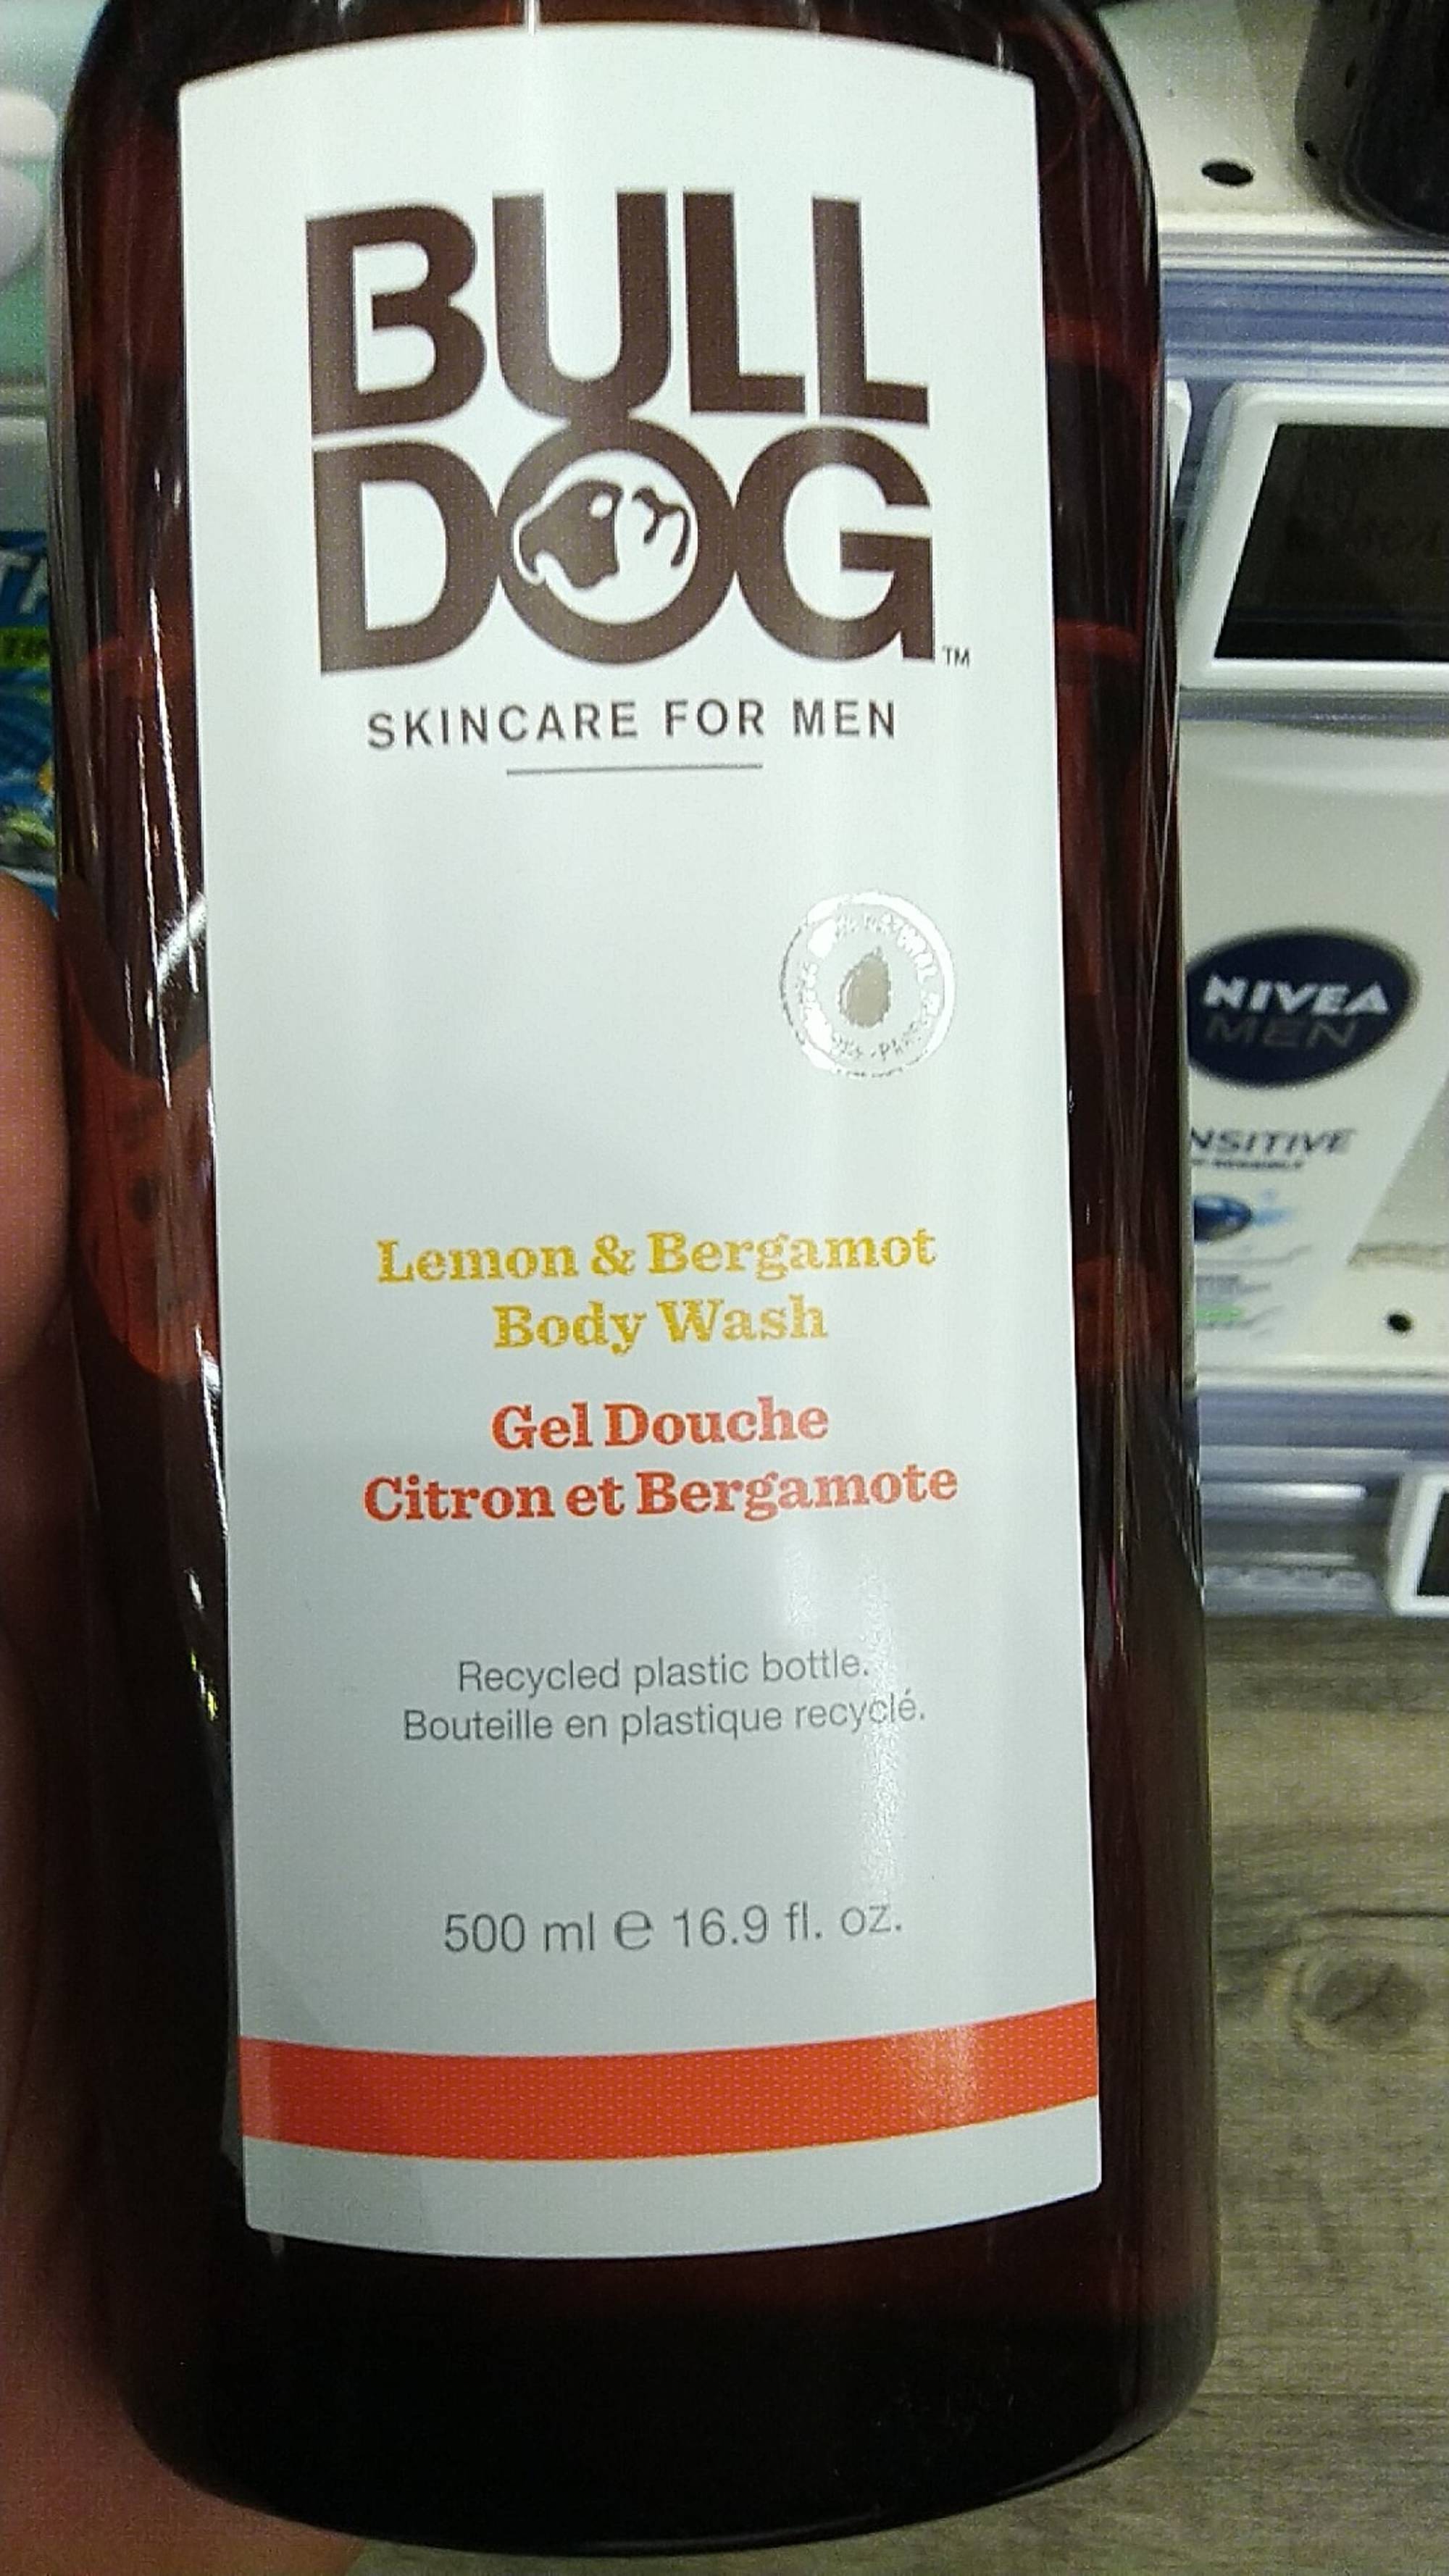 BULL DOG - Skincare for men - Gel douche citron et bergamote